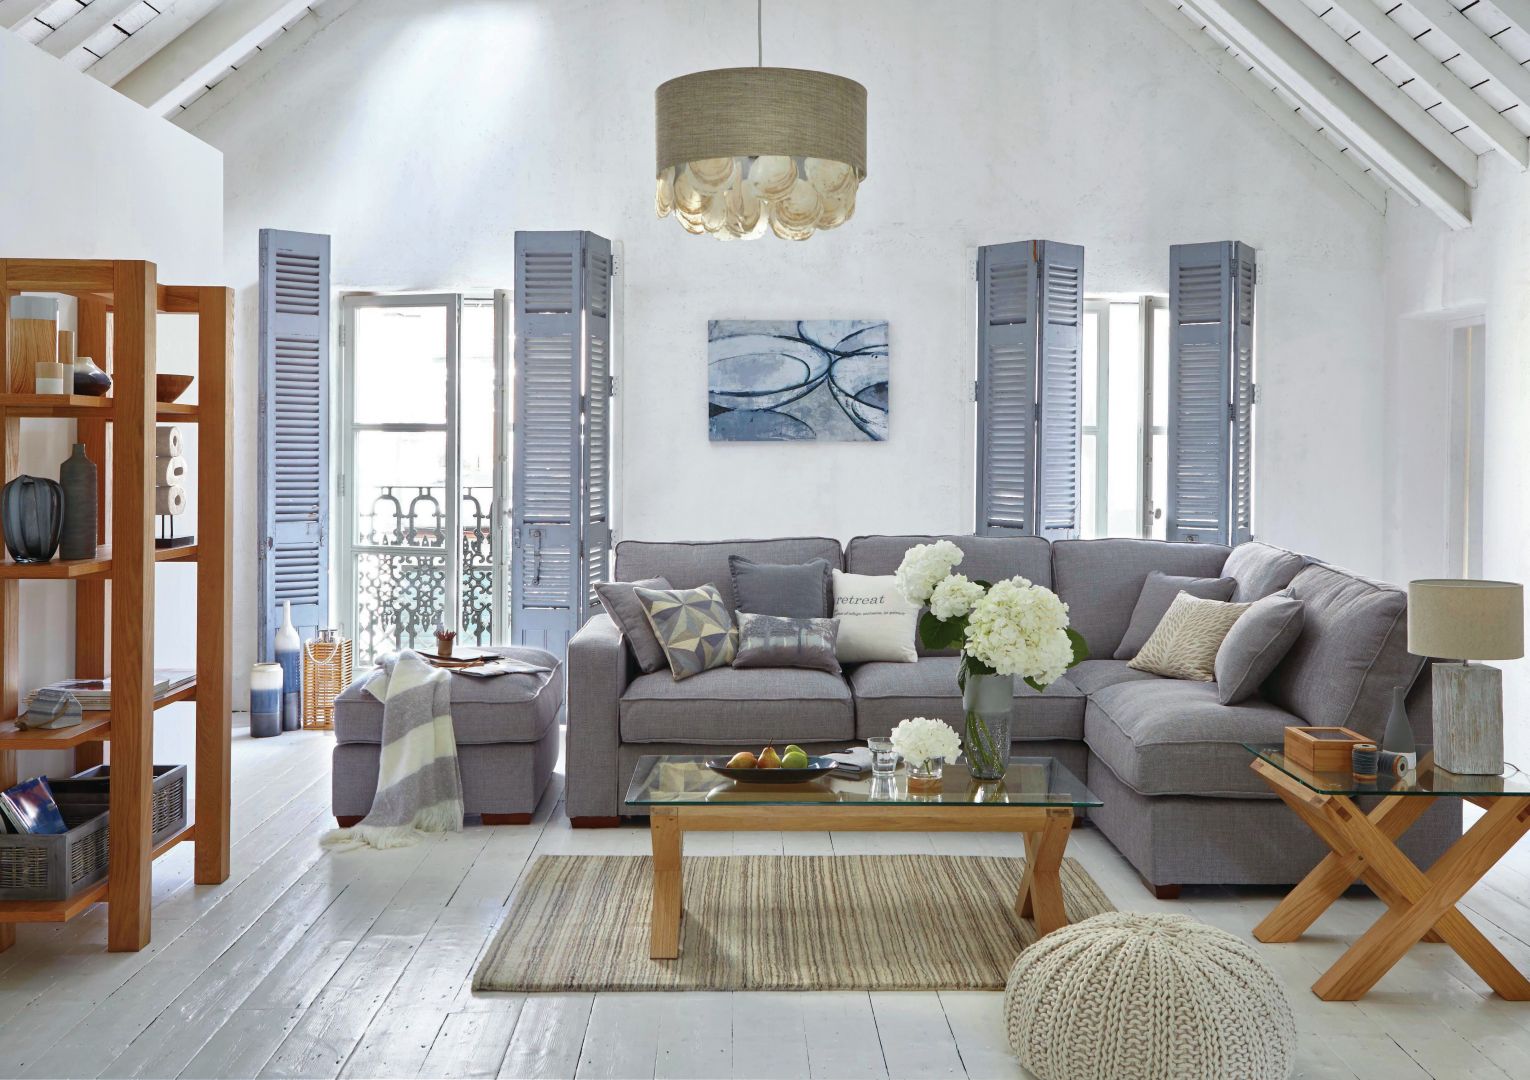 We wnętrzach w stylu marinistycznym oprócz bieli i błękitów nie może zabraknąć naturalnego drewna. Sofa w szarym kolorze doskonale współgra ze stolikiem na drewnianych nogach, o szklanym blacie. Fot. Dunelm